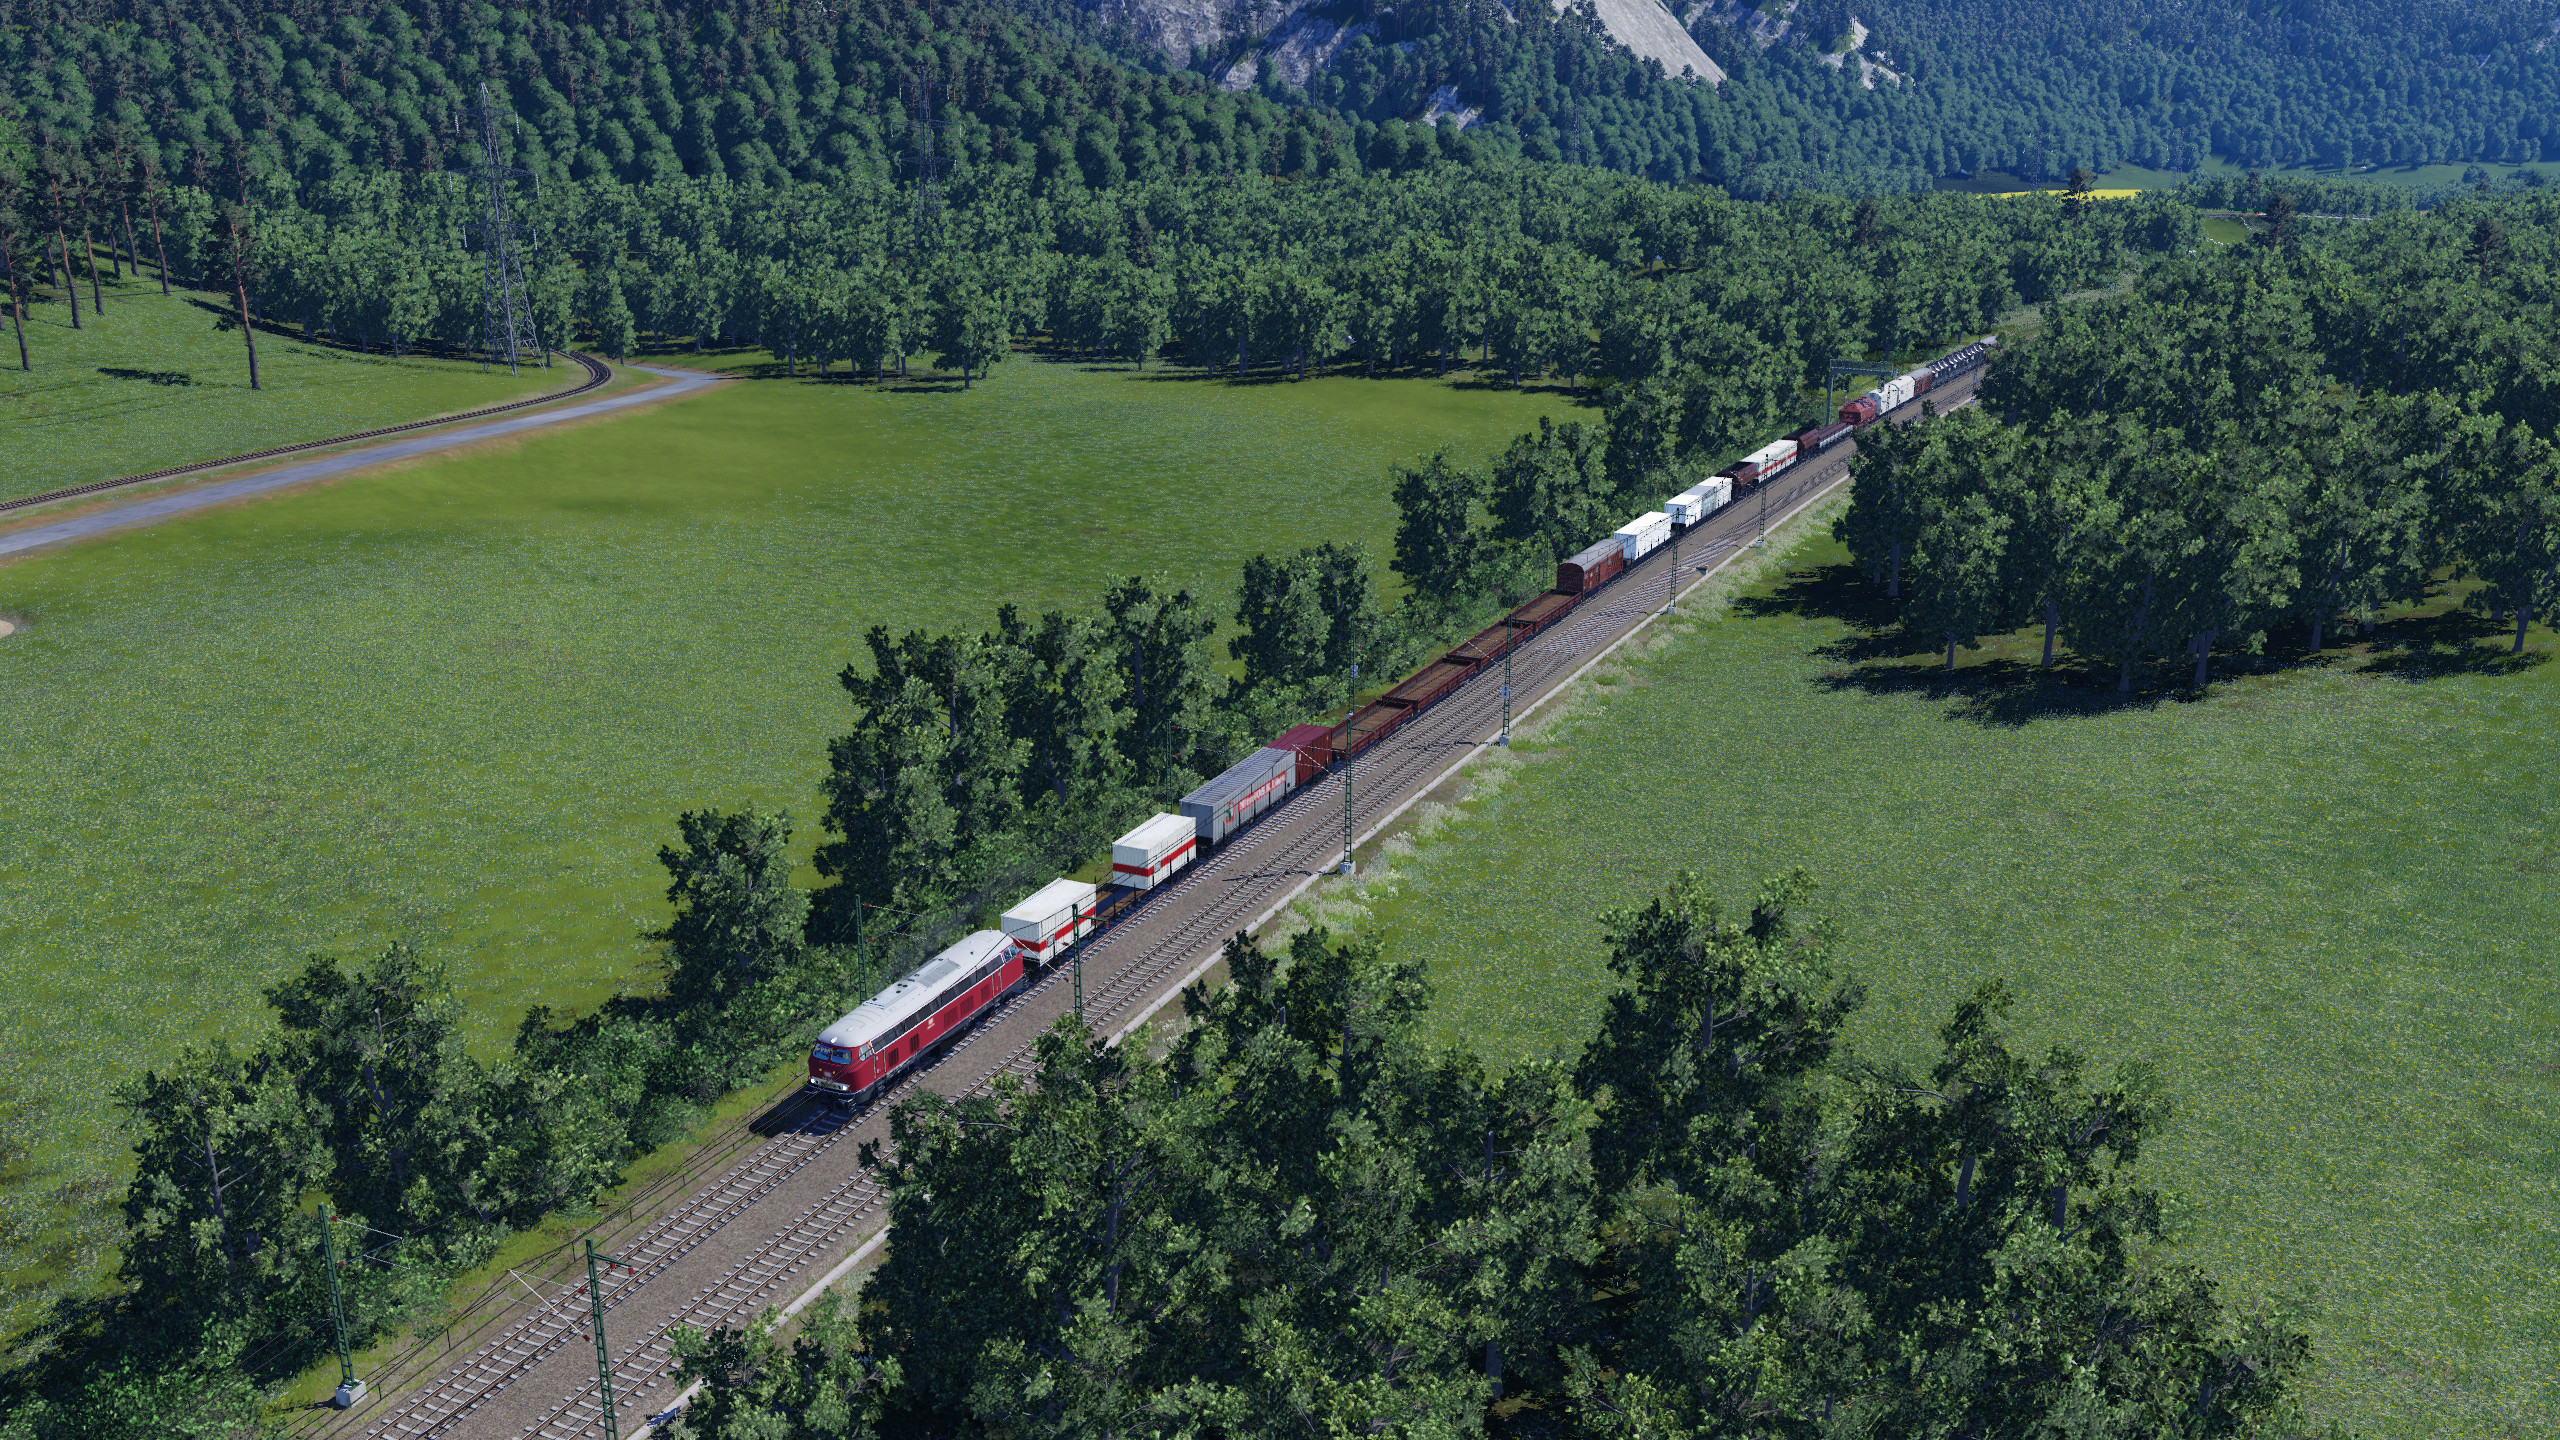 Gemischter Güterzug